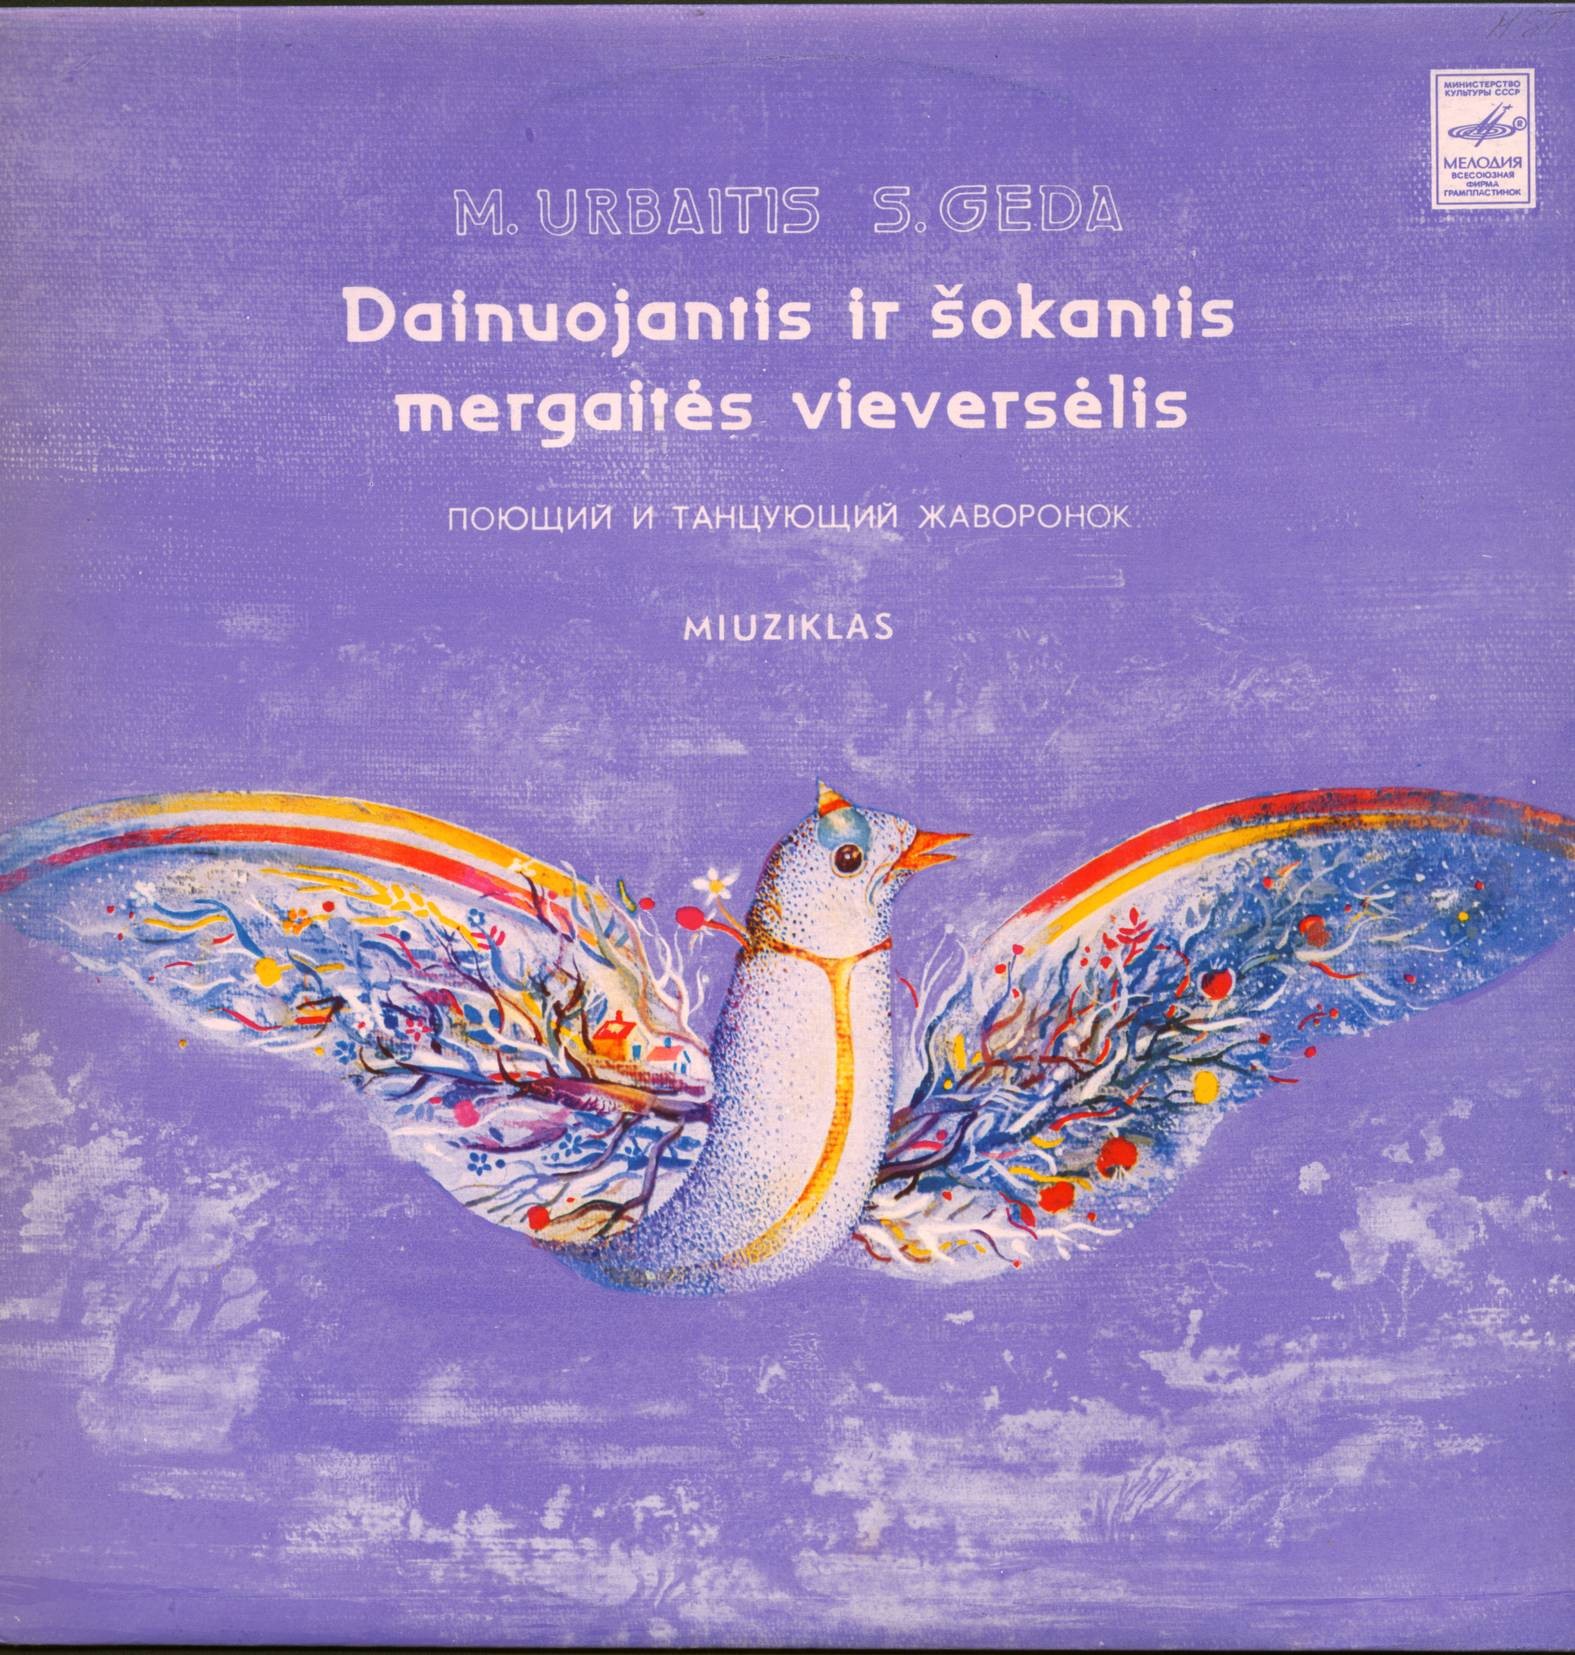 М. УРБАЙТИС (1952): Поющий и танцующий жаворонок, Мюзикл (текст С. Гяды) - на литовском яз.